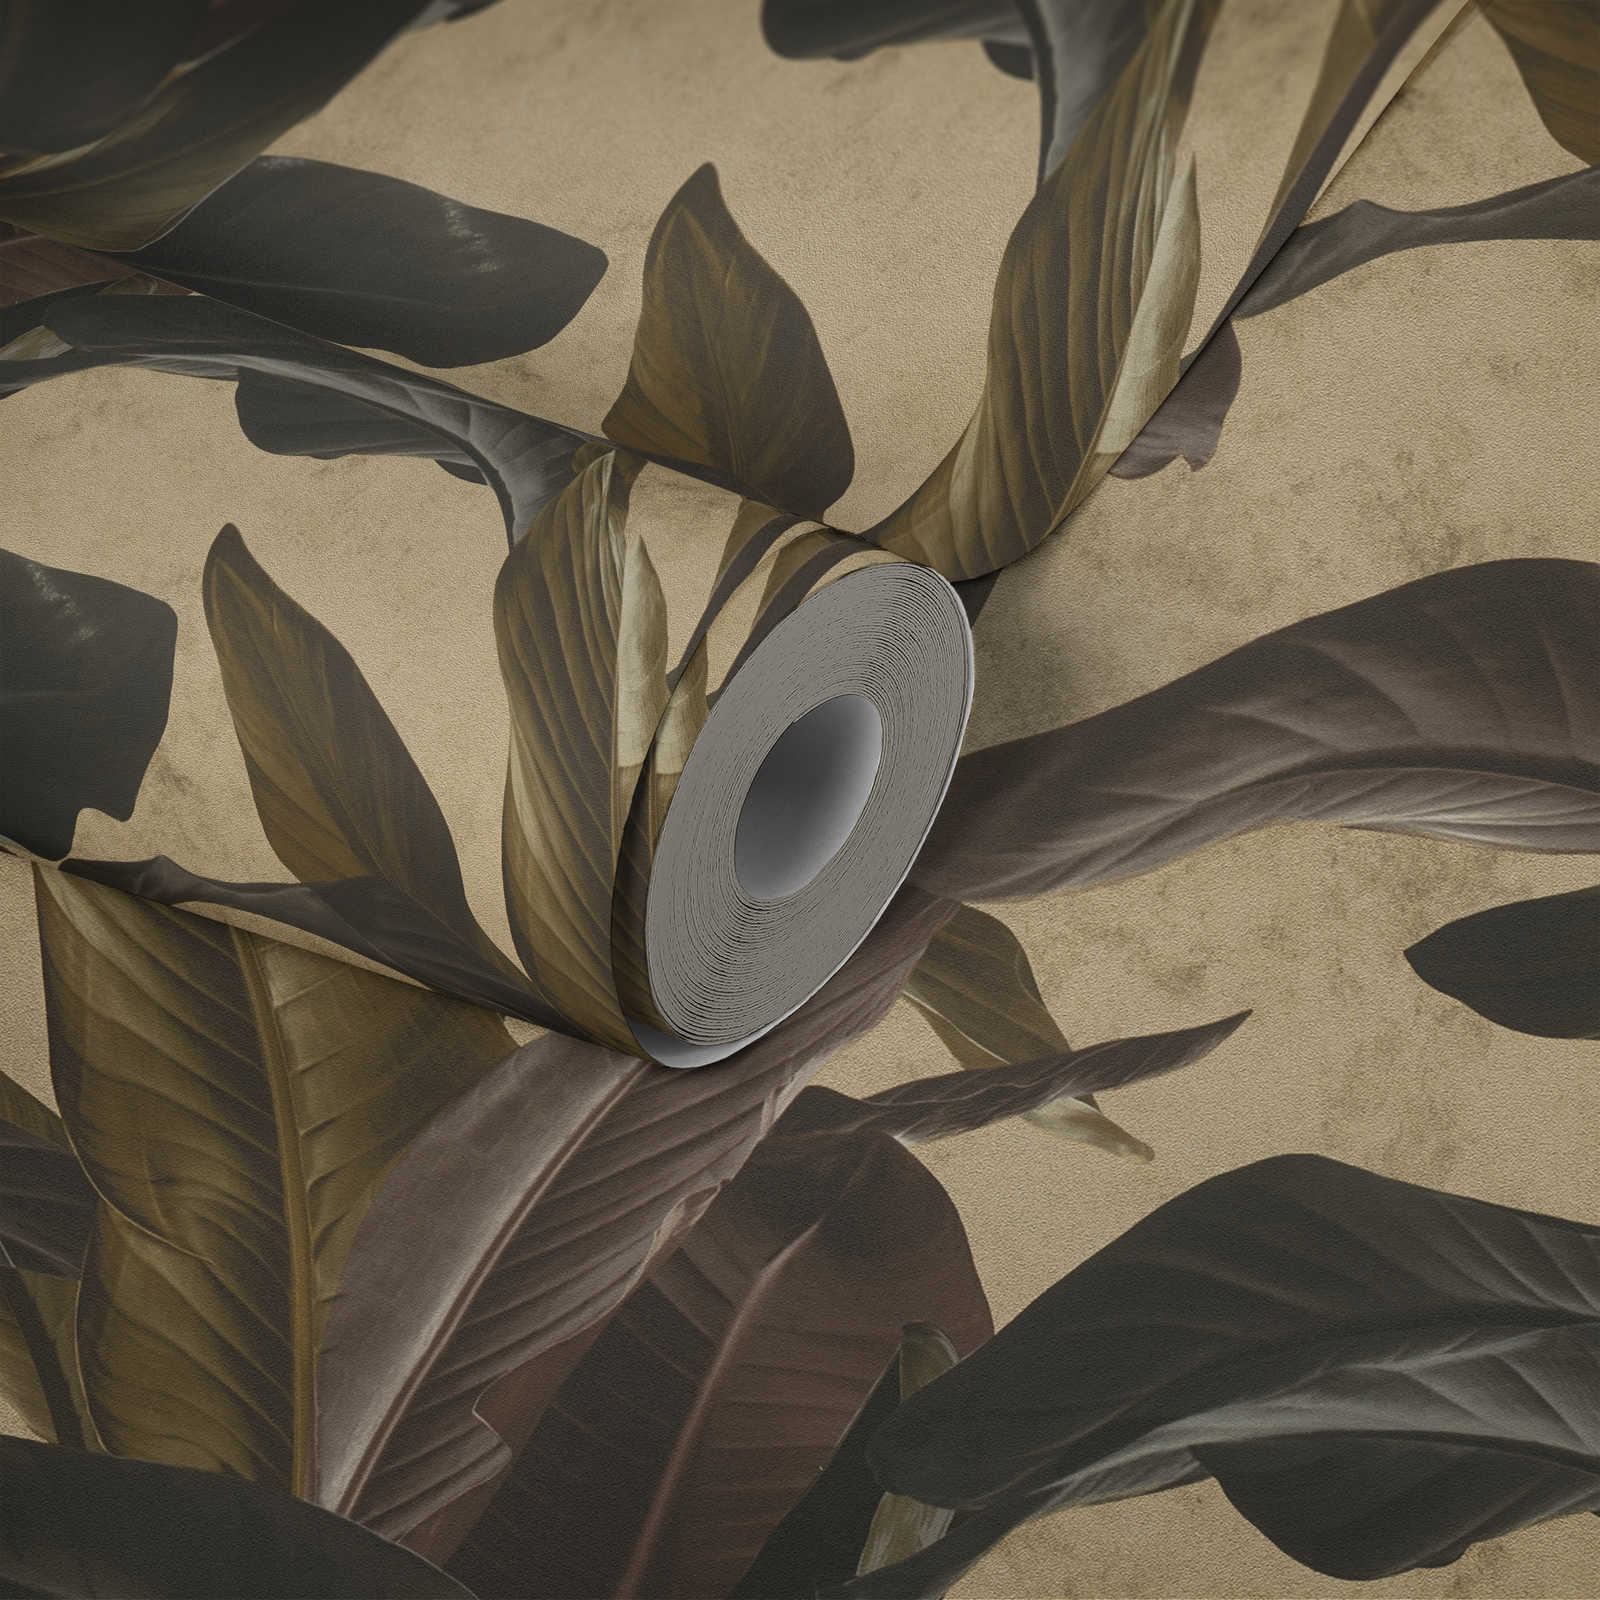             Papel pintado con diseño natural y brillo metálico - marrón, metálico, negro
        